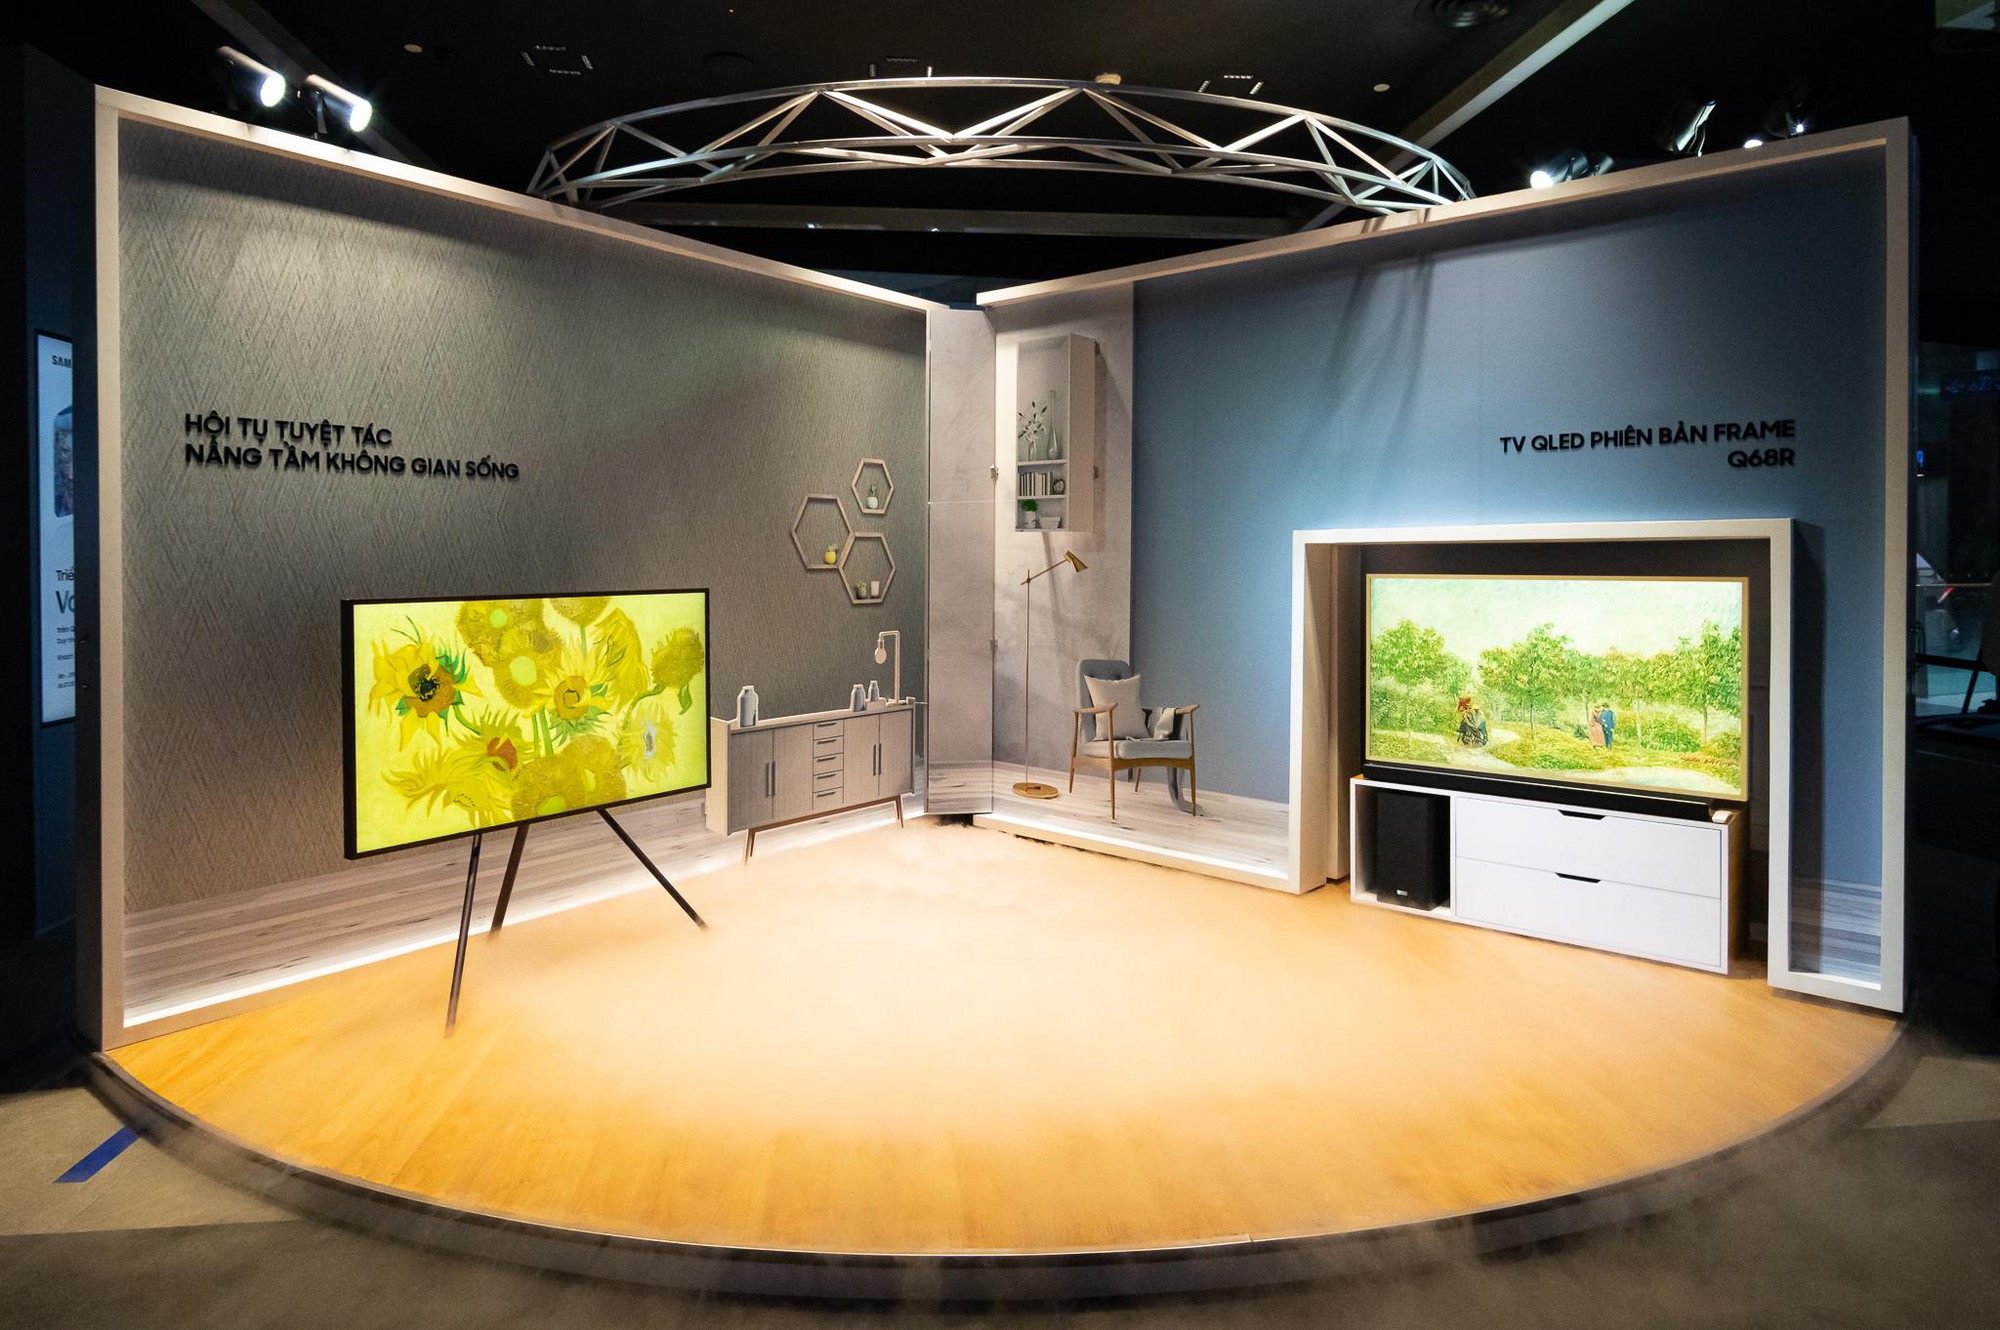 Biến TV thành khung tranh độc đáo, Triển lãm bộ sưu tập Van Gogh tại Samsung Showcase thu hút người tham dự - Ảnh 4.